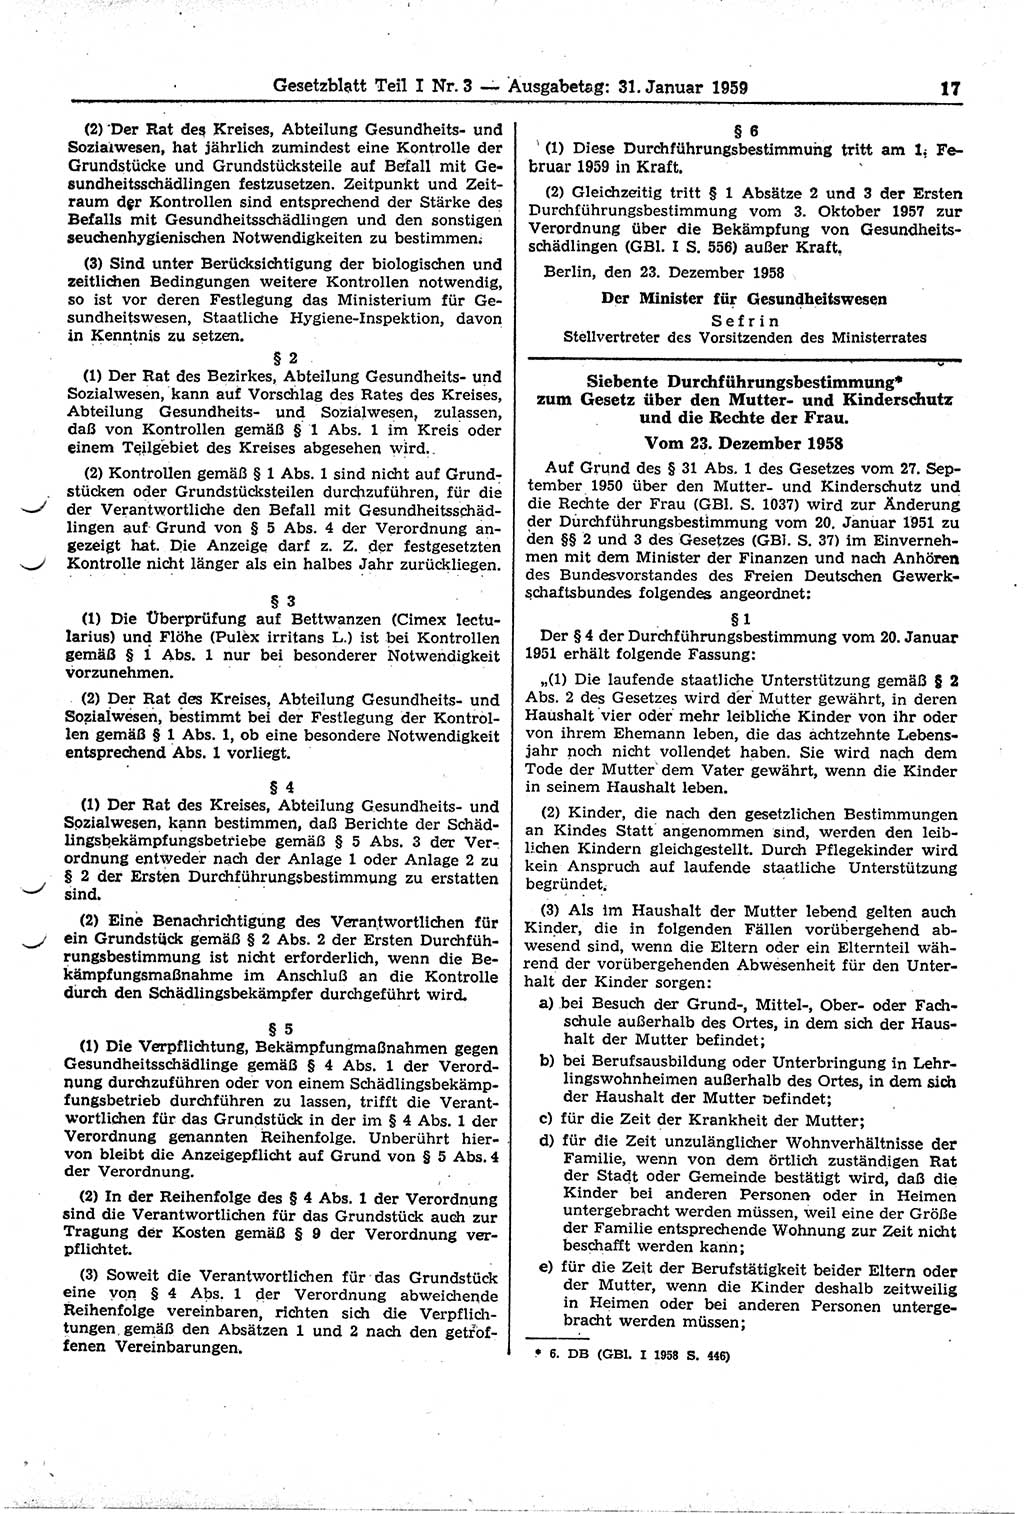 Gesetzblatt (GBl.) der Deutschen Demokratischen Republik (DDR) Teil Ⅰ 1959, Seite 17 (GBl. DDR Ⅰ 1959, S. 17)